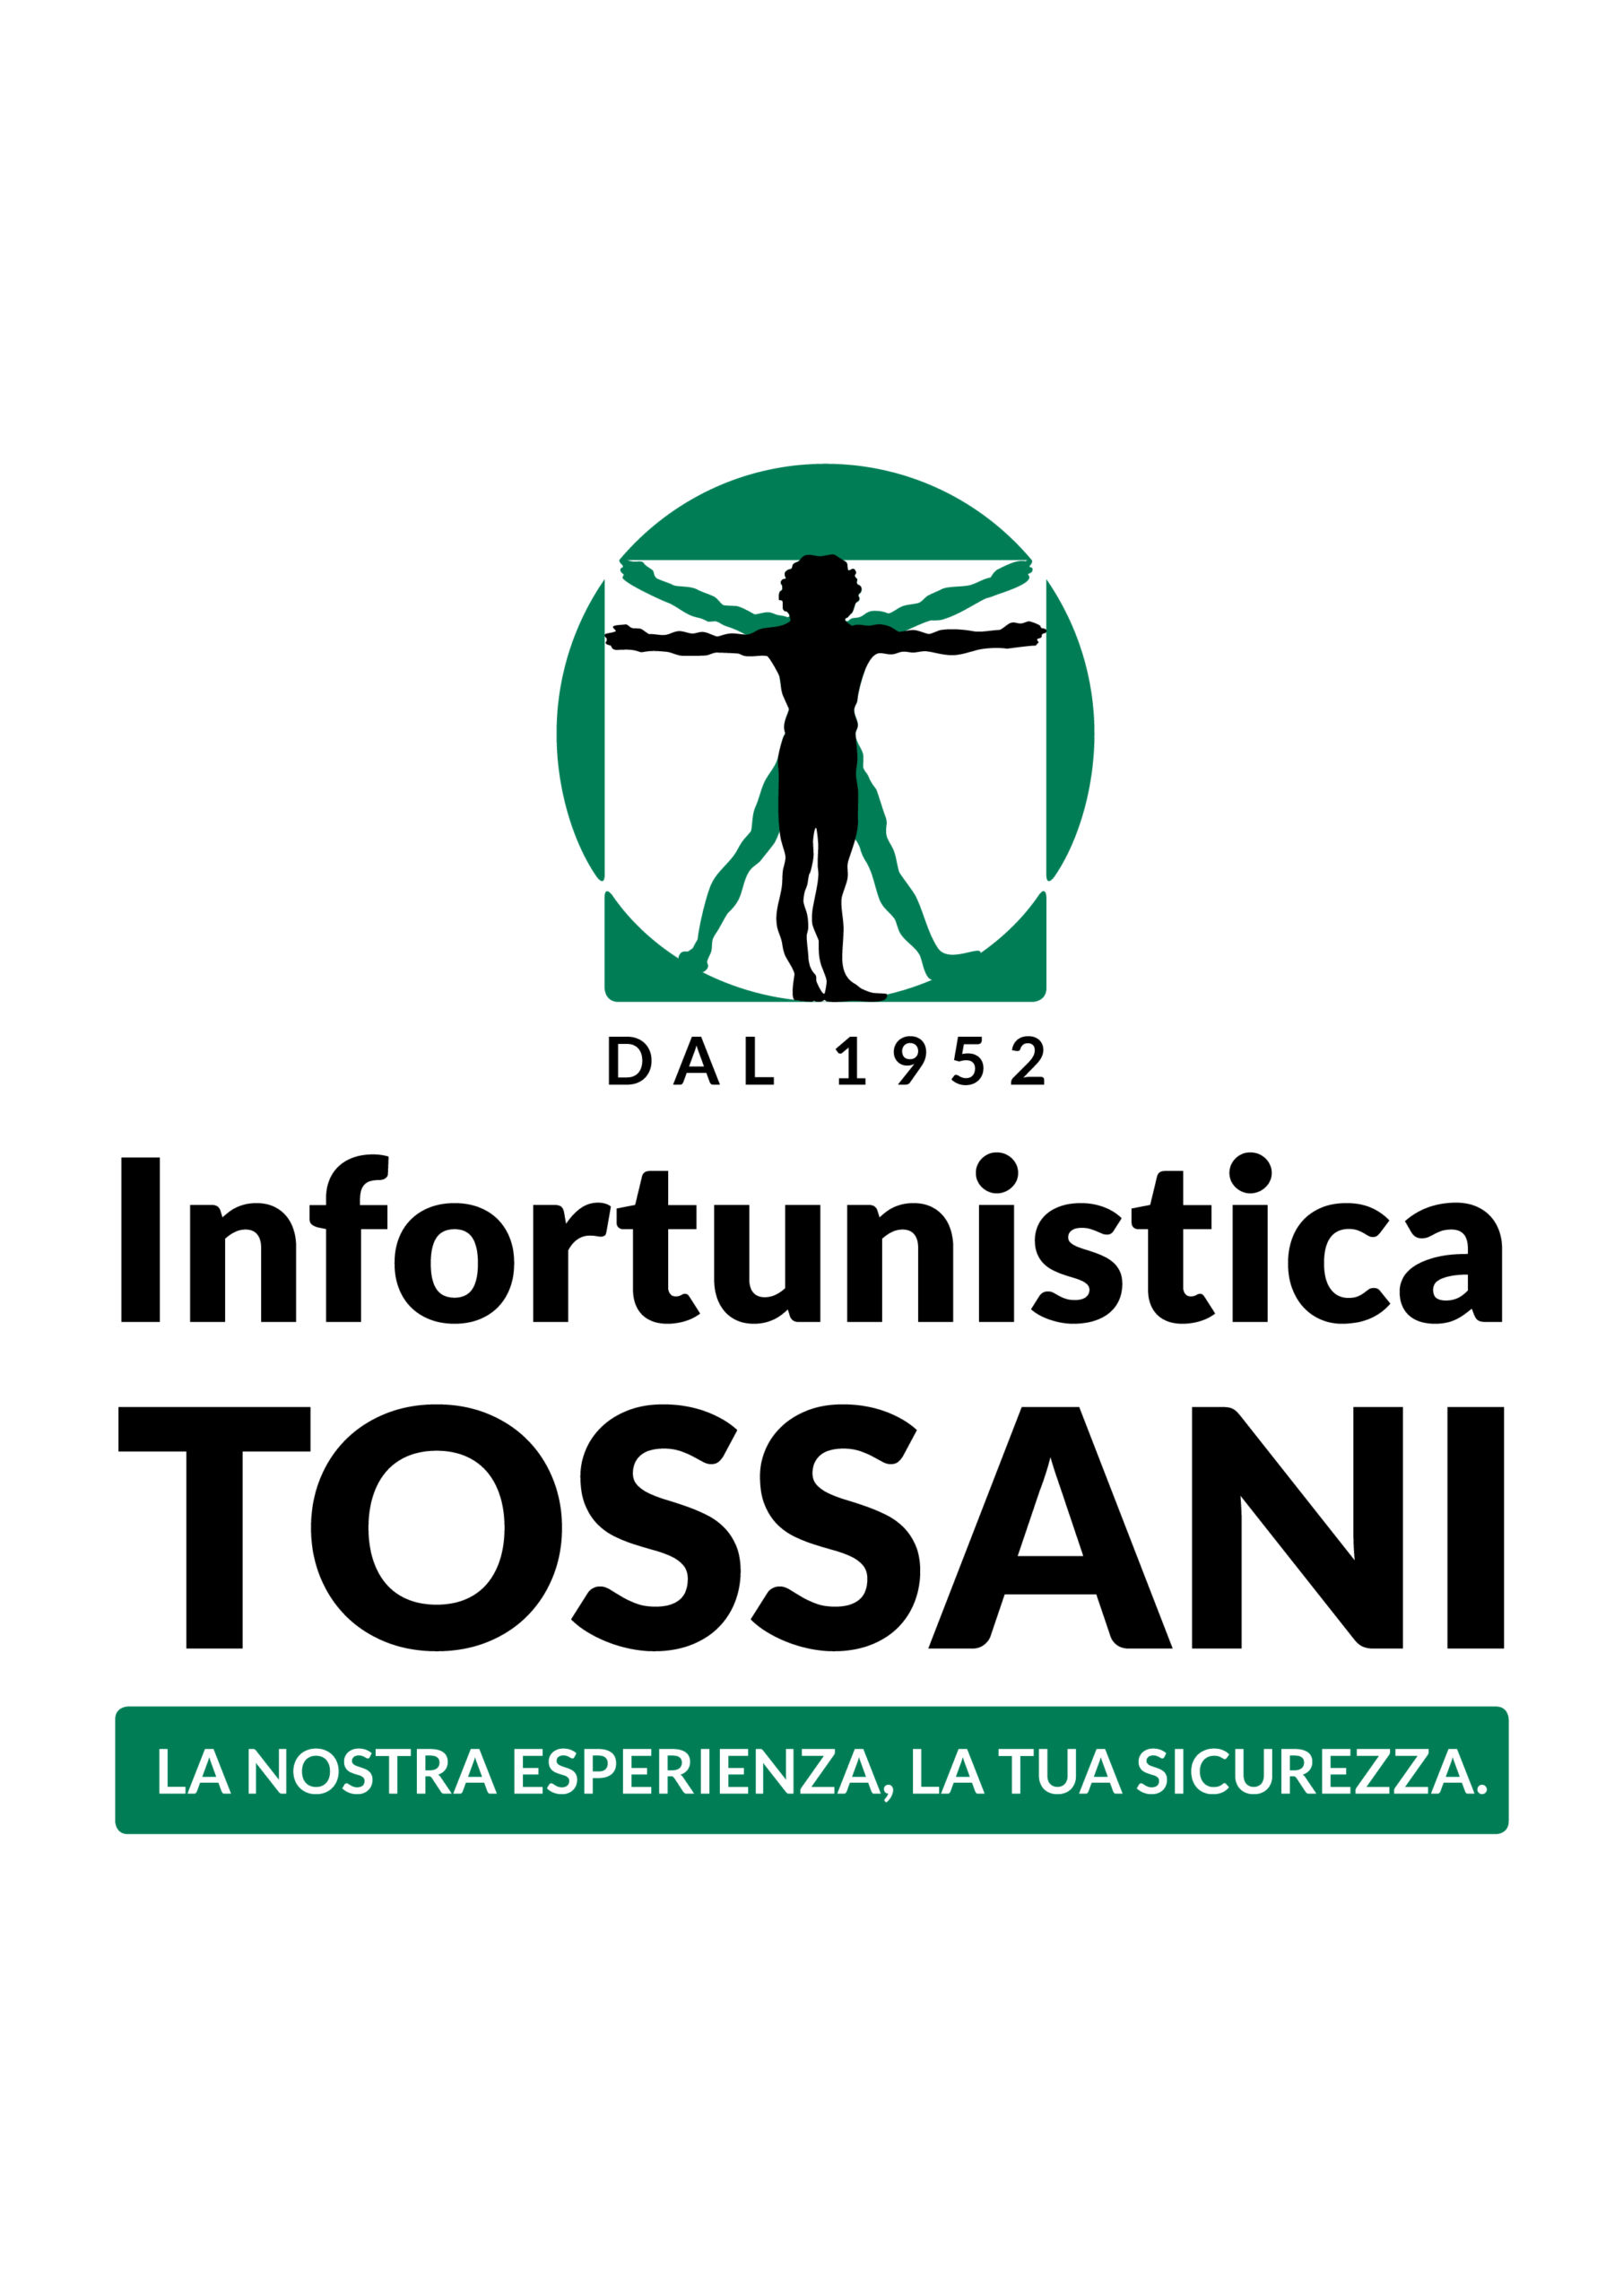 TOSSANI logo